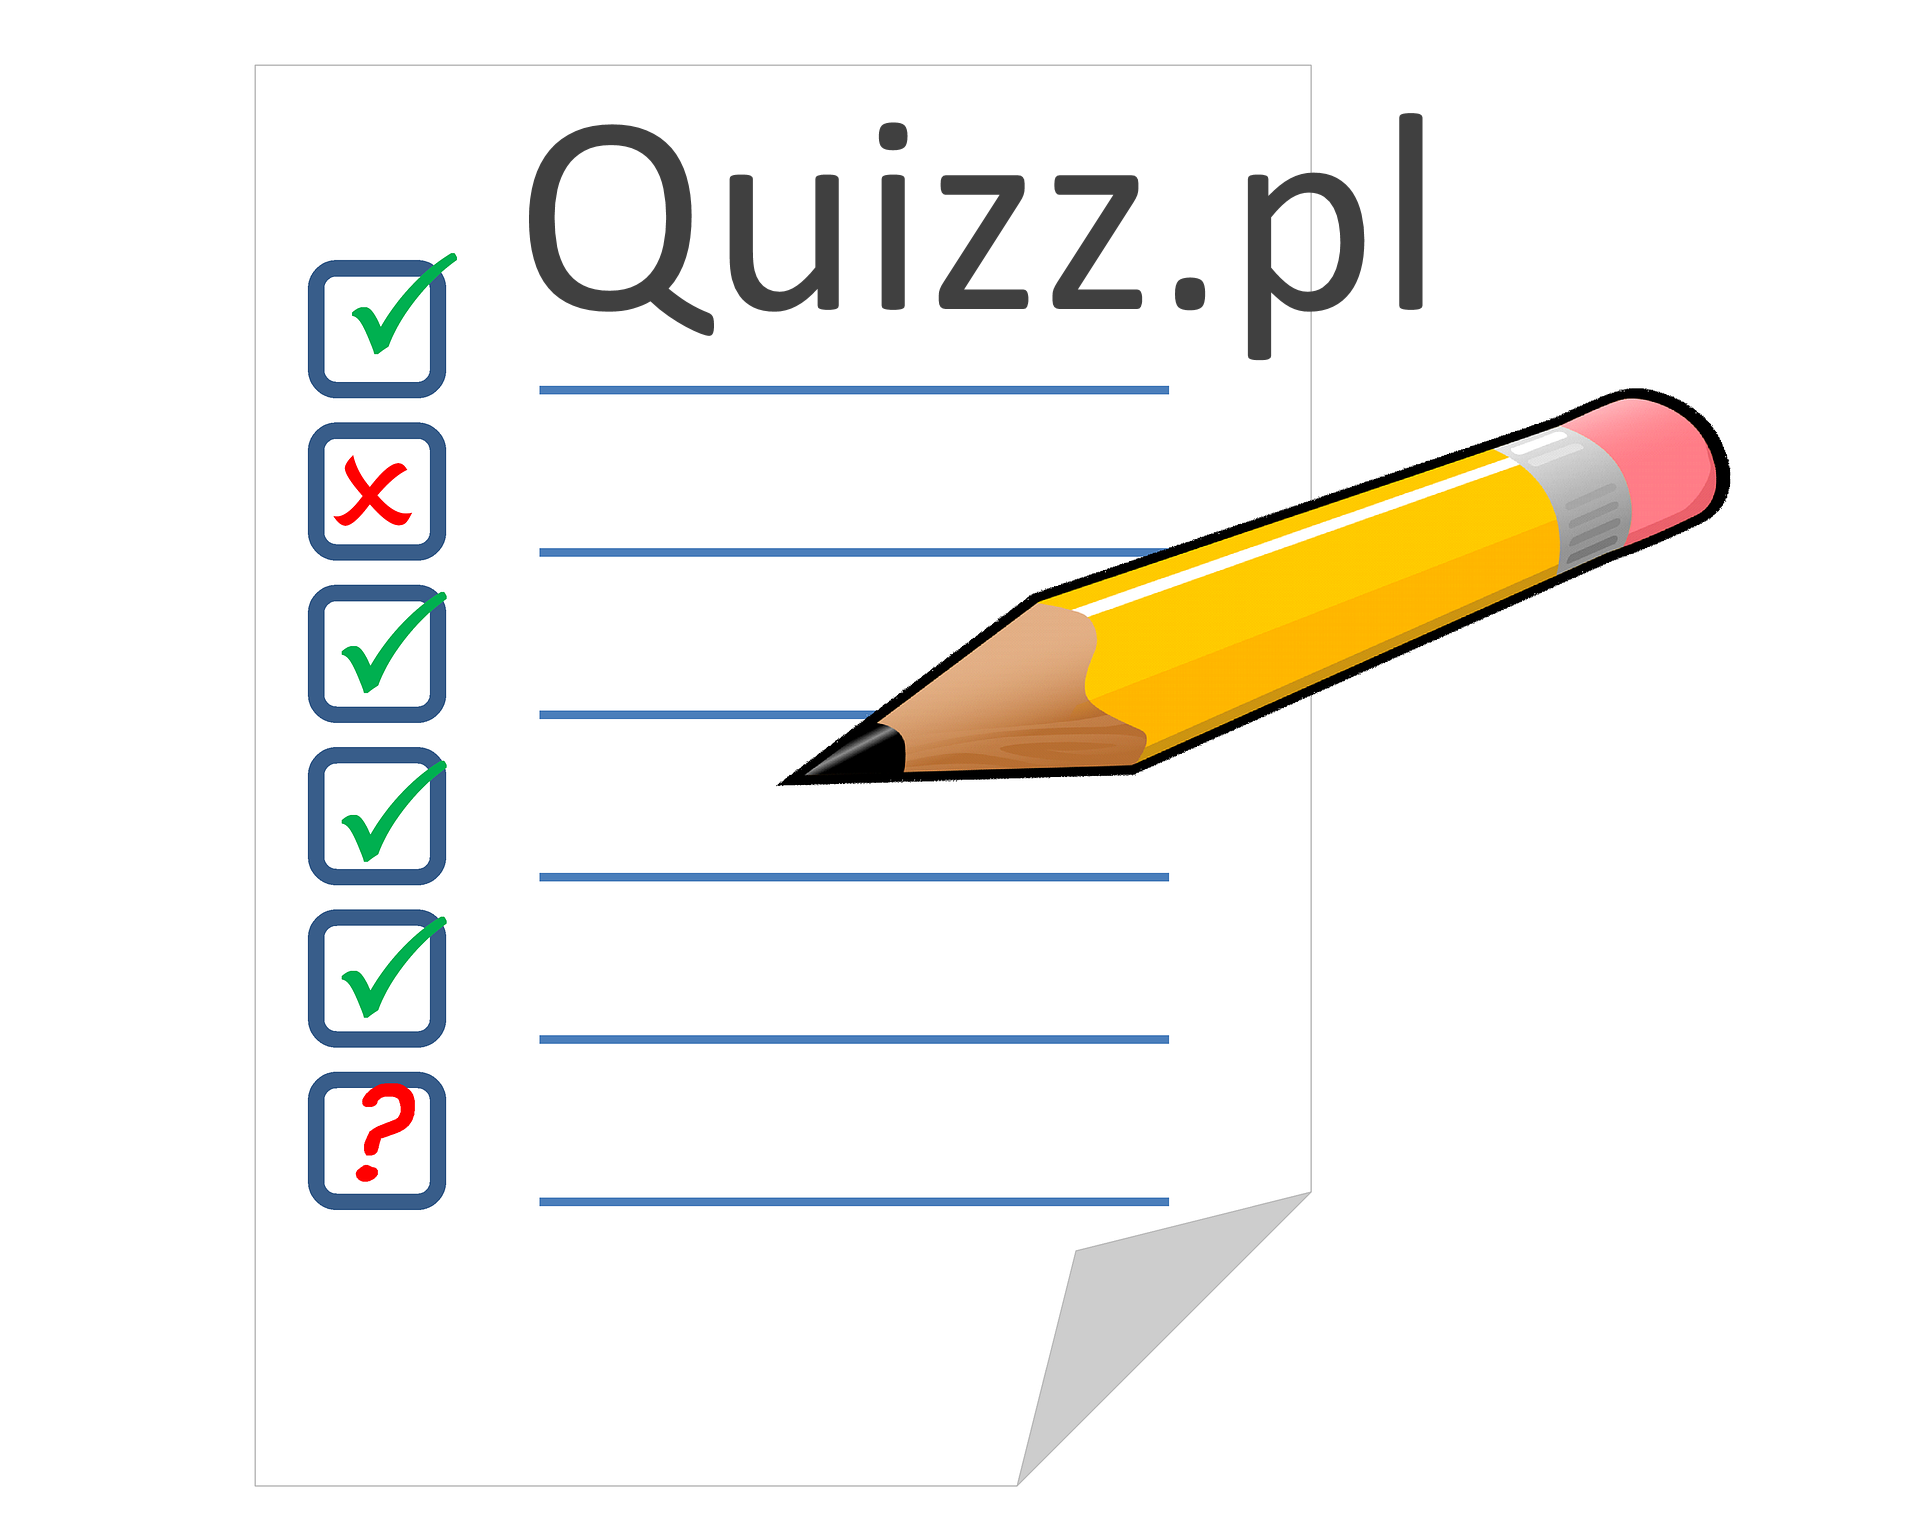 Hooves - bezpłatne quizy, ankiety, testy wiedzy - Quizz.pl